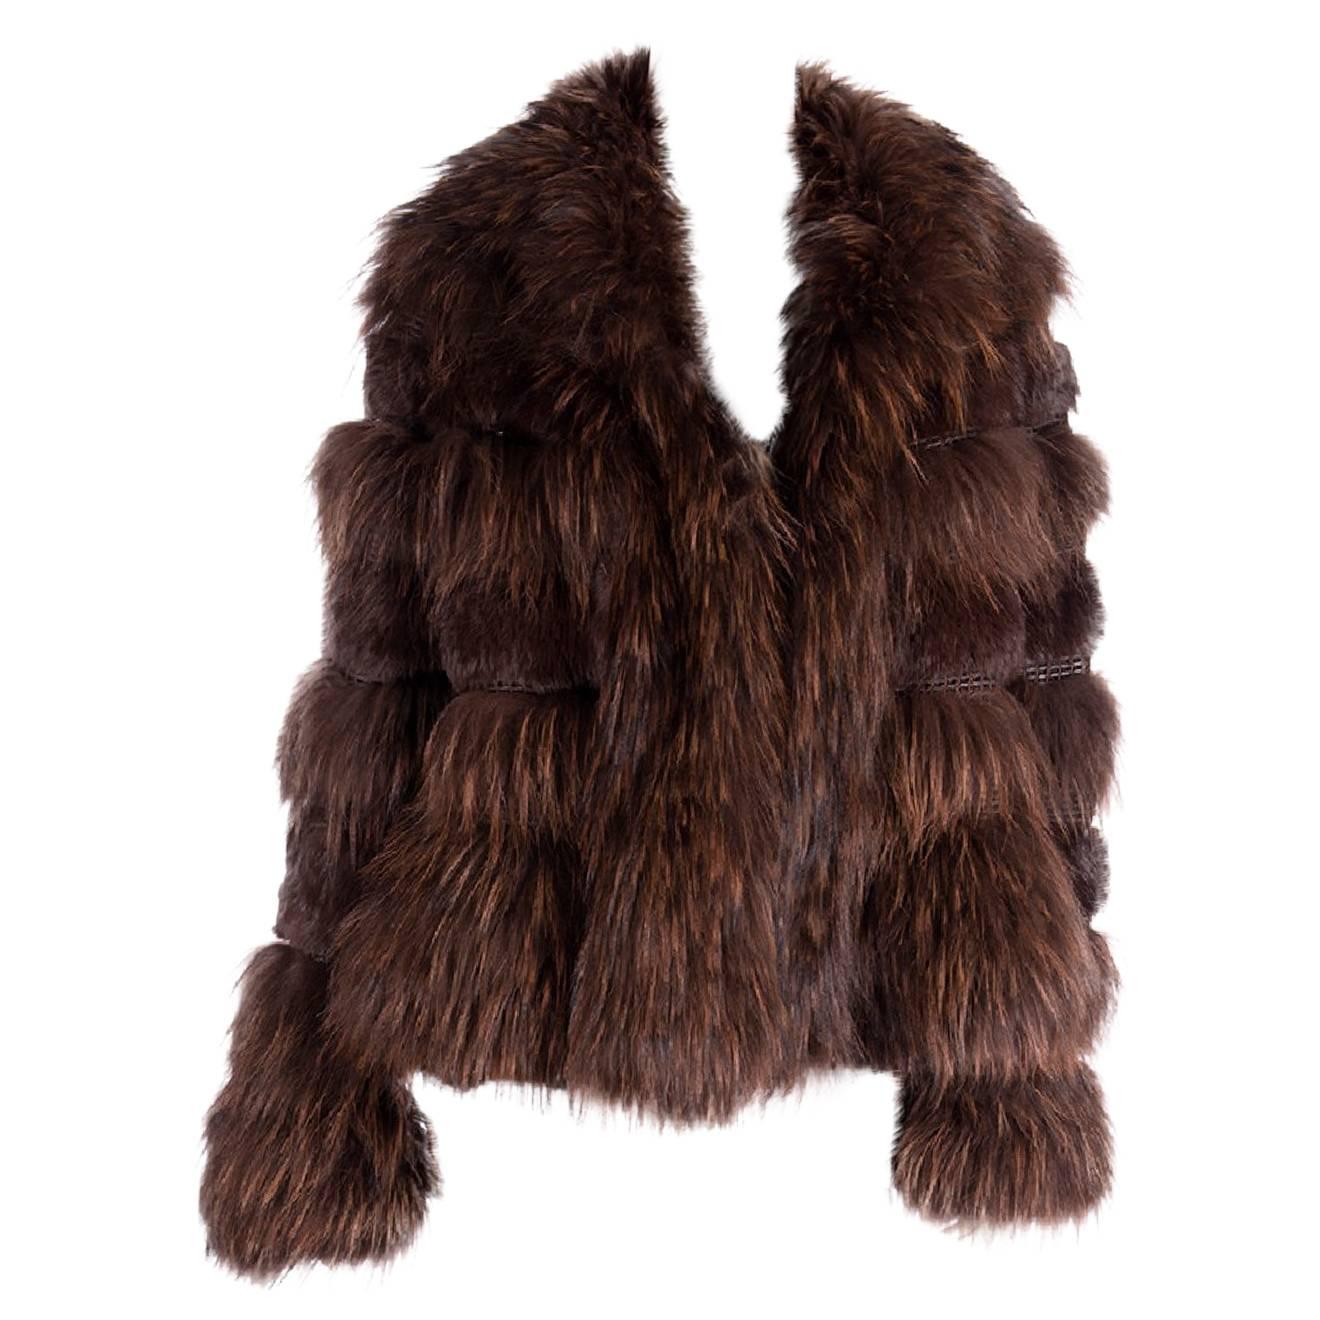 Sonia Rykiel 80s Real Chubby Fur Coat